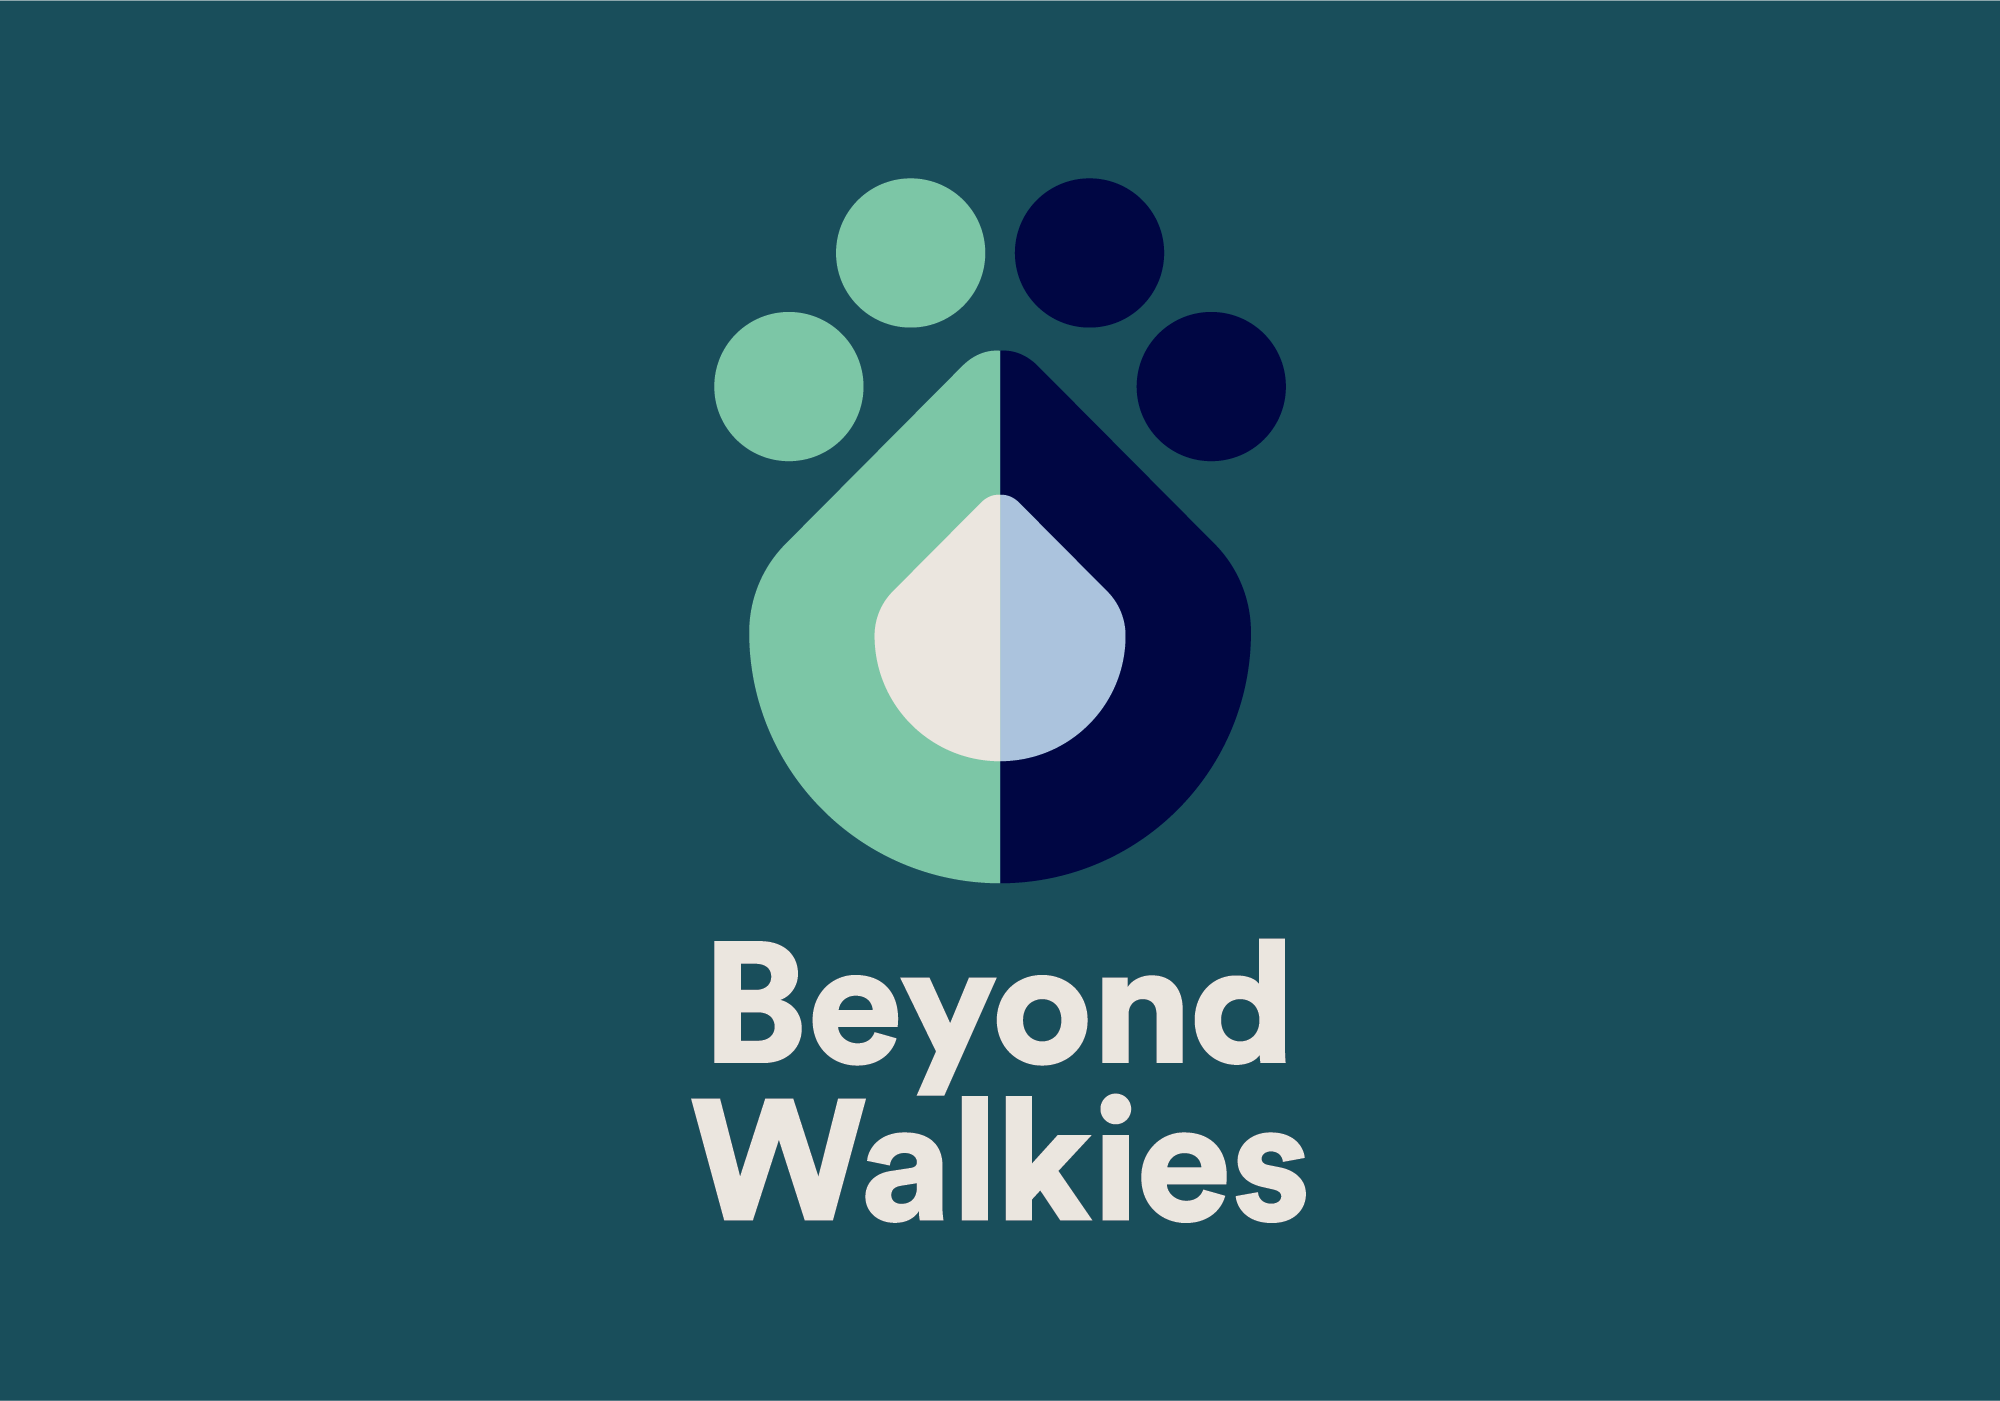 Beyond Walkies